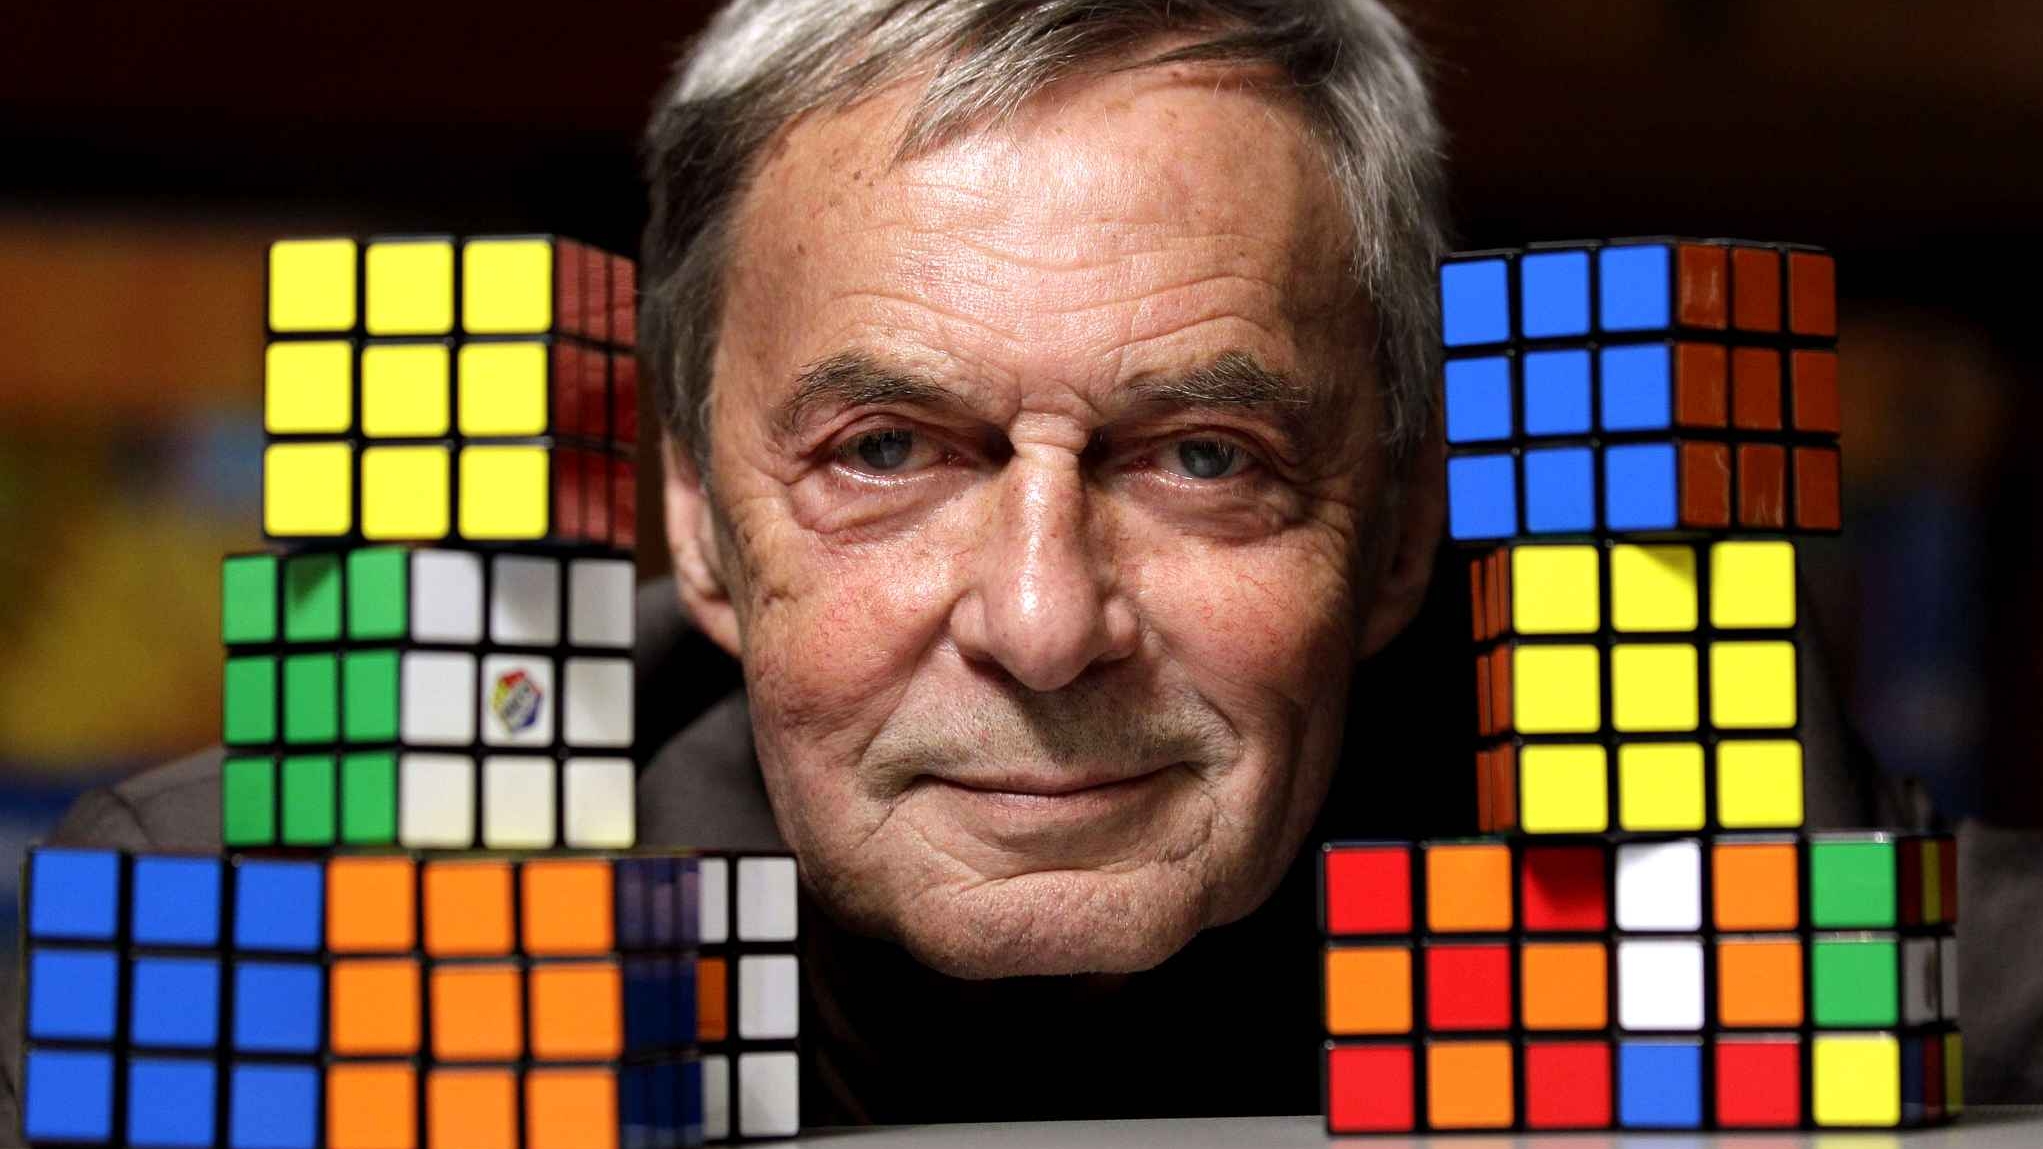 El creador del cubo de Rubik cuenta la historia de su creación en un libro de memorias.